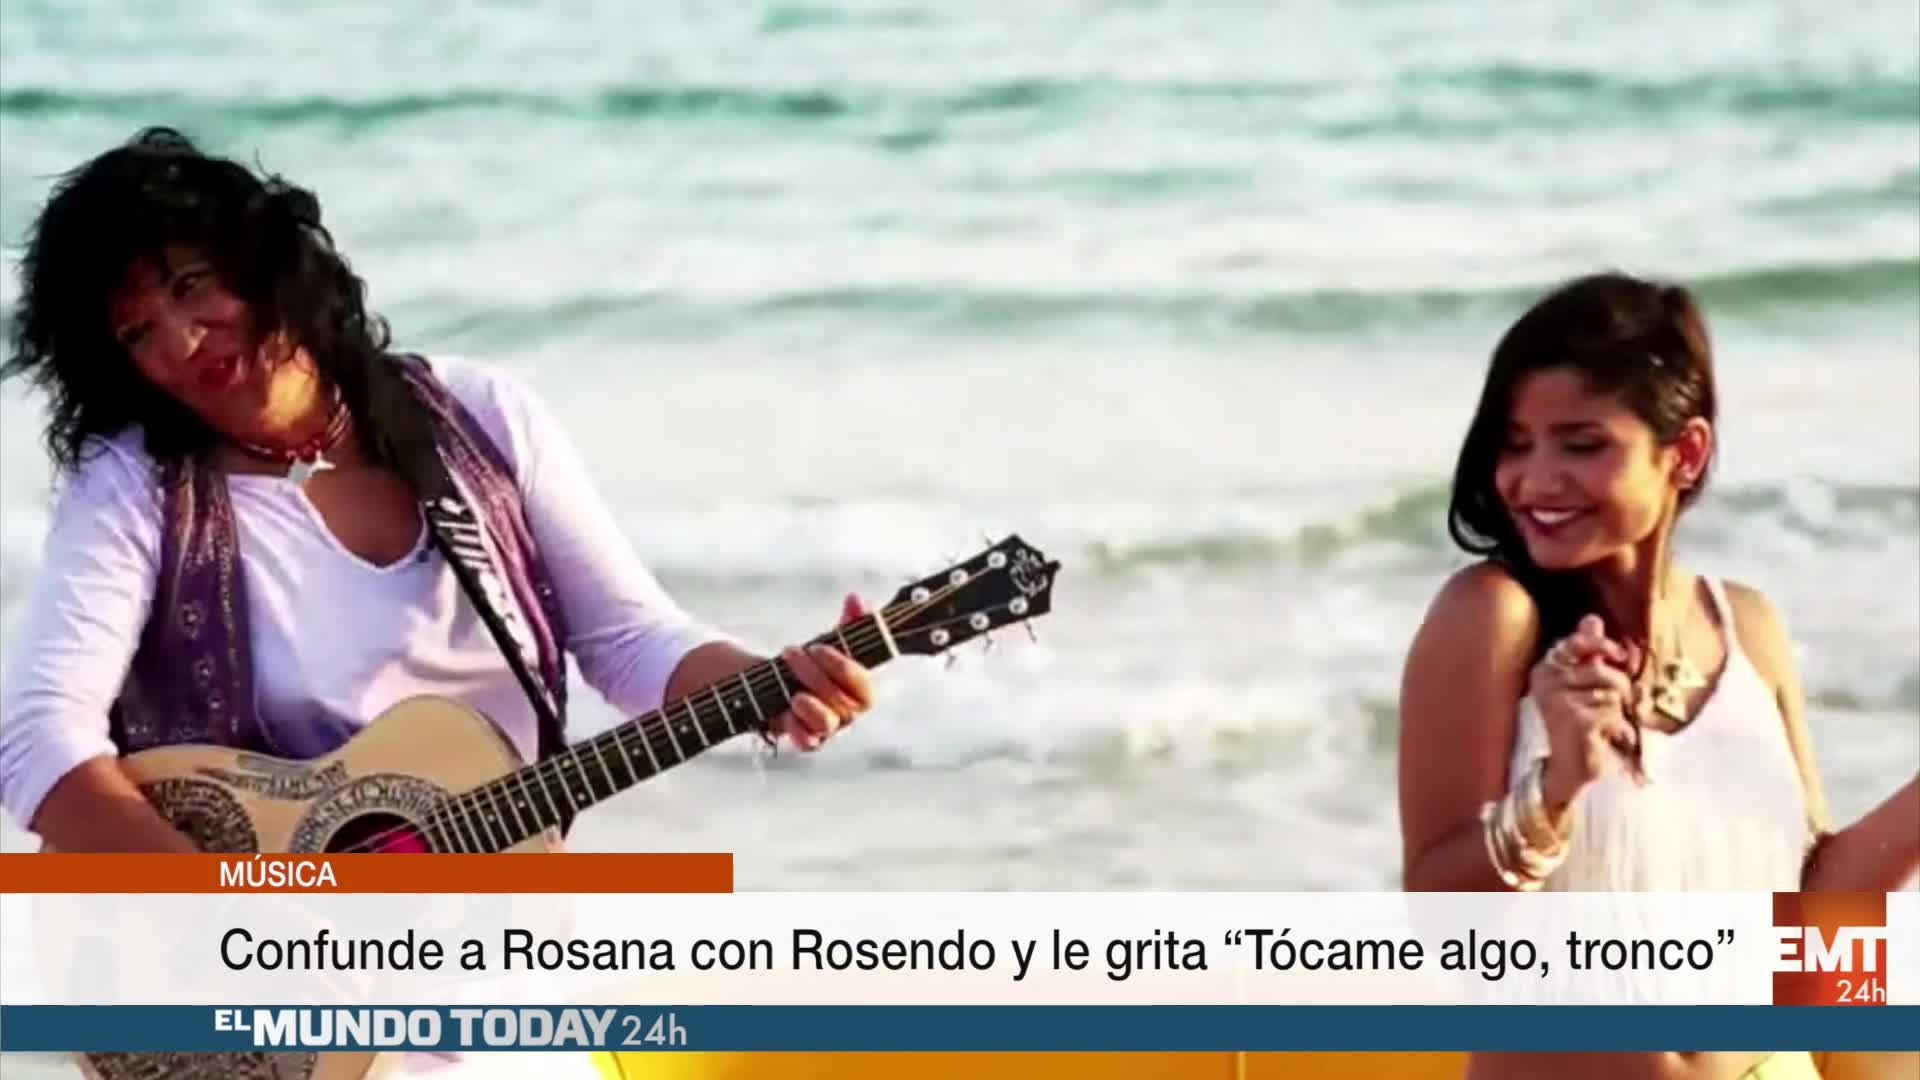 Temporada 1 Confunde a Rosana con Rosendo